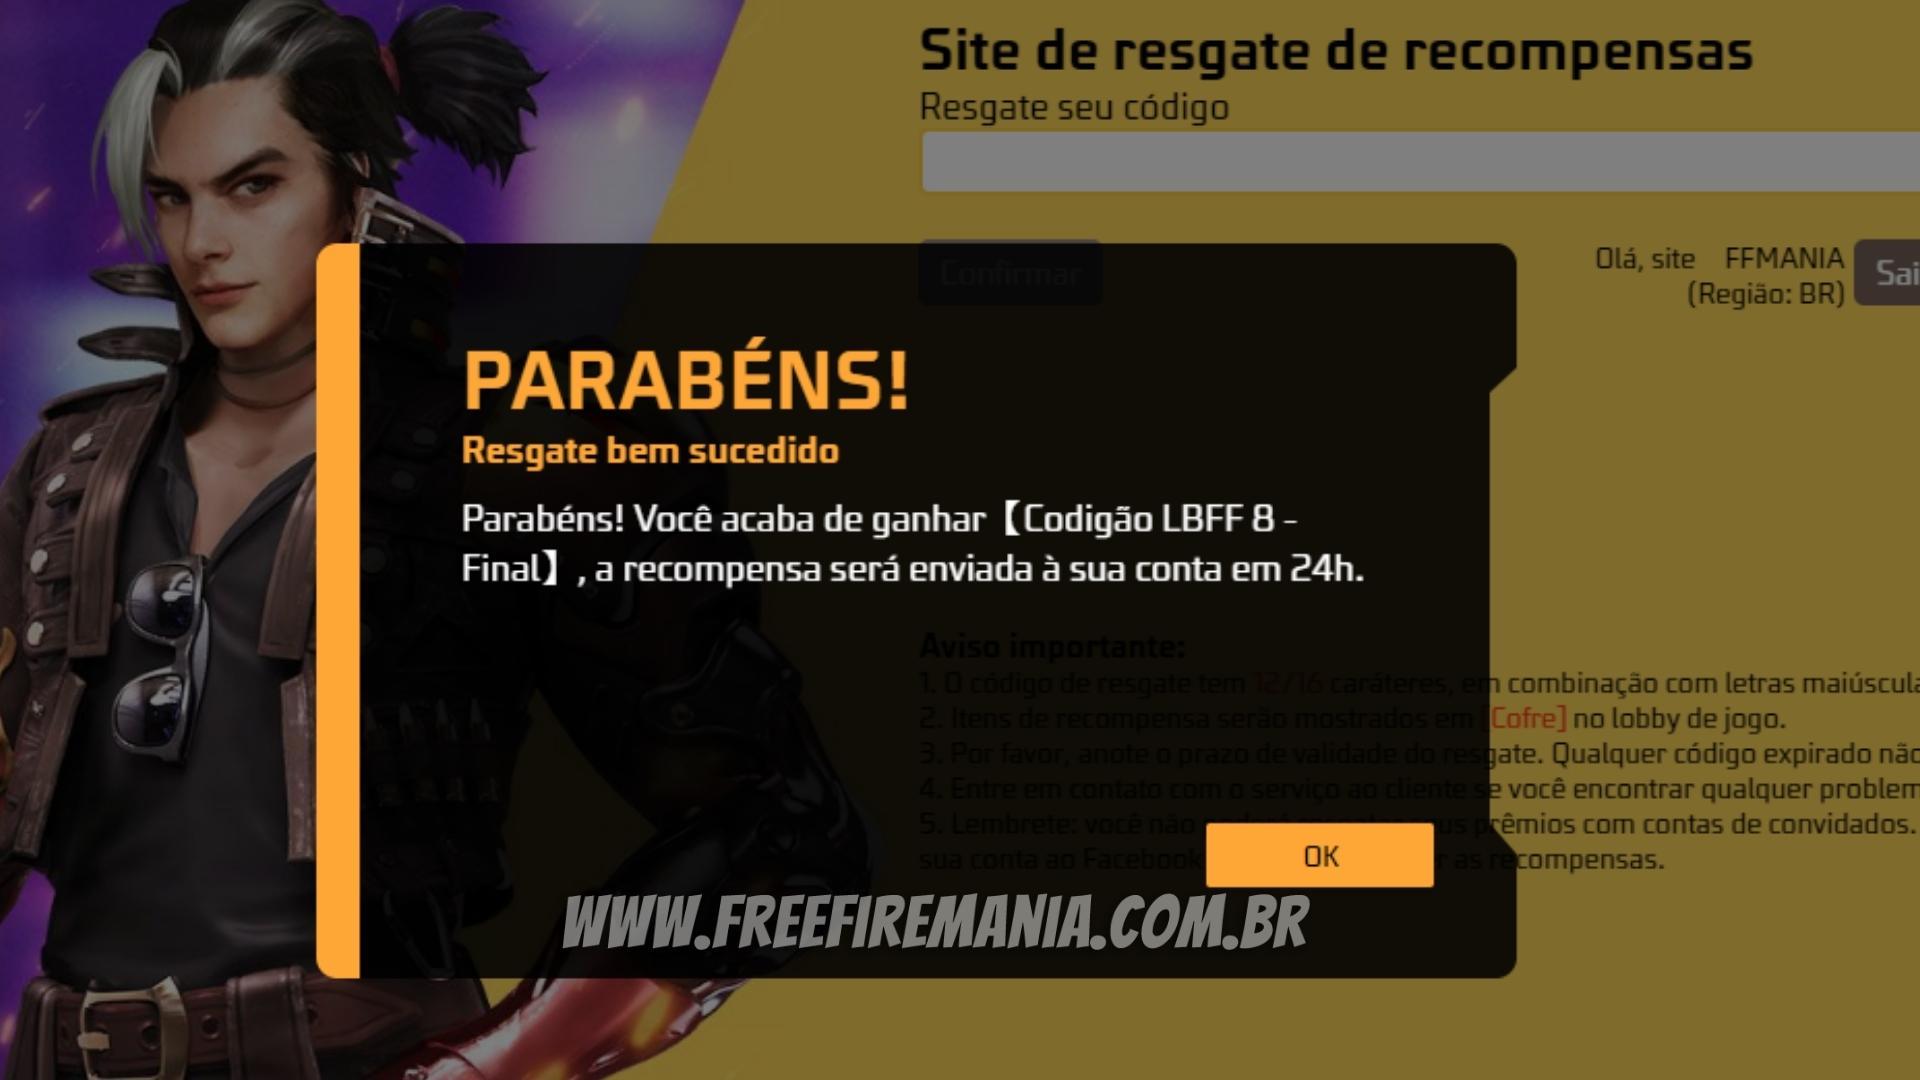 CODIGUIN FF: último dia do código Free Fire Angelical; resgate no site  Rewards